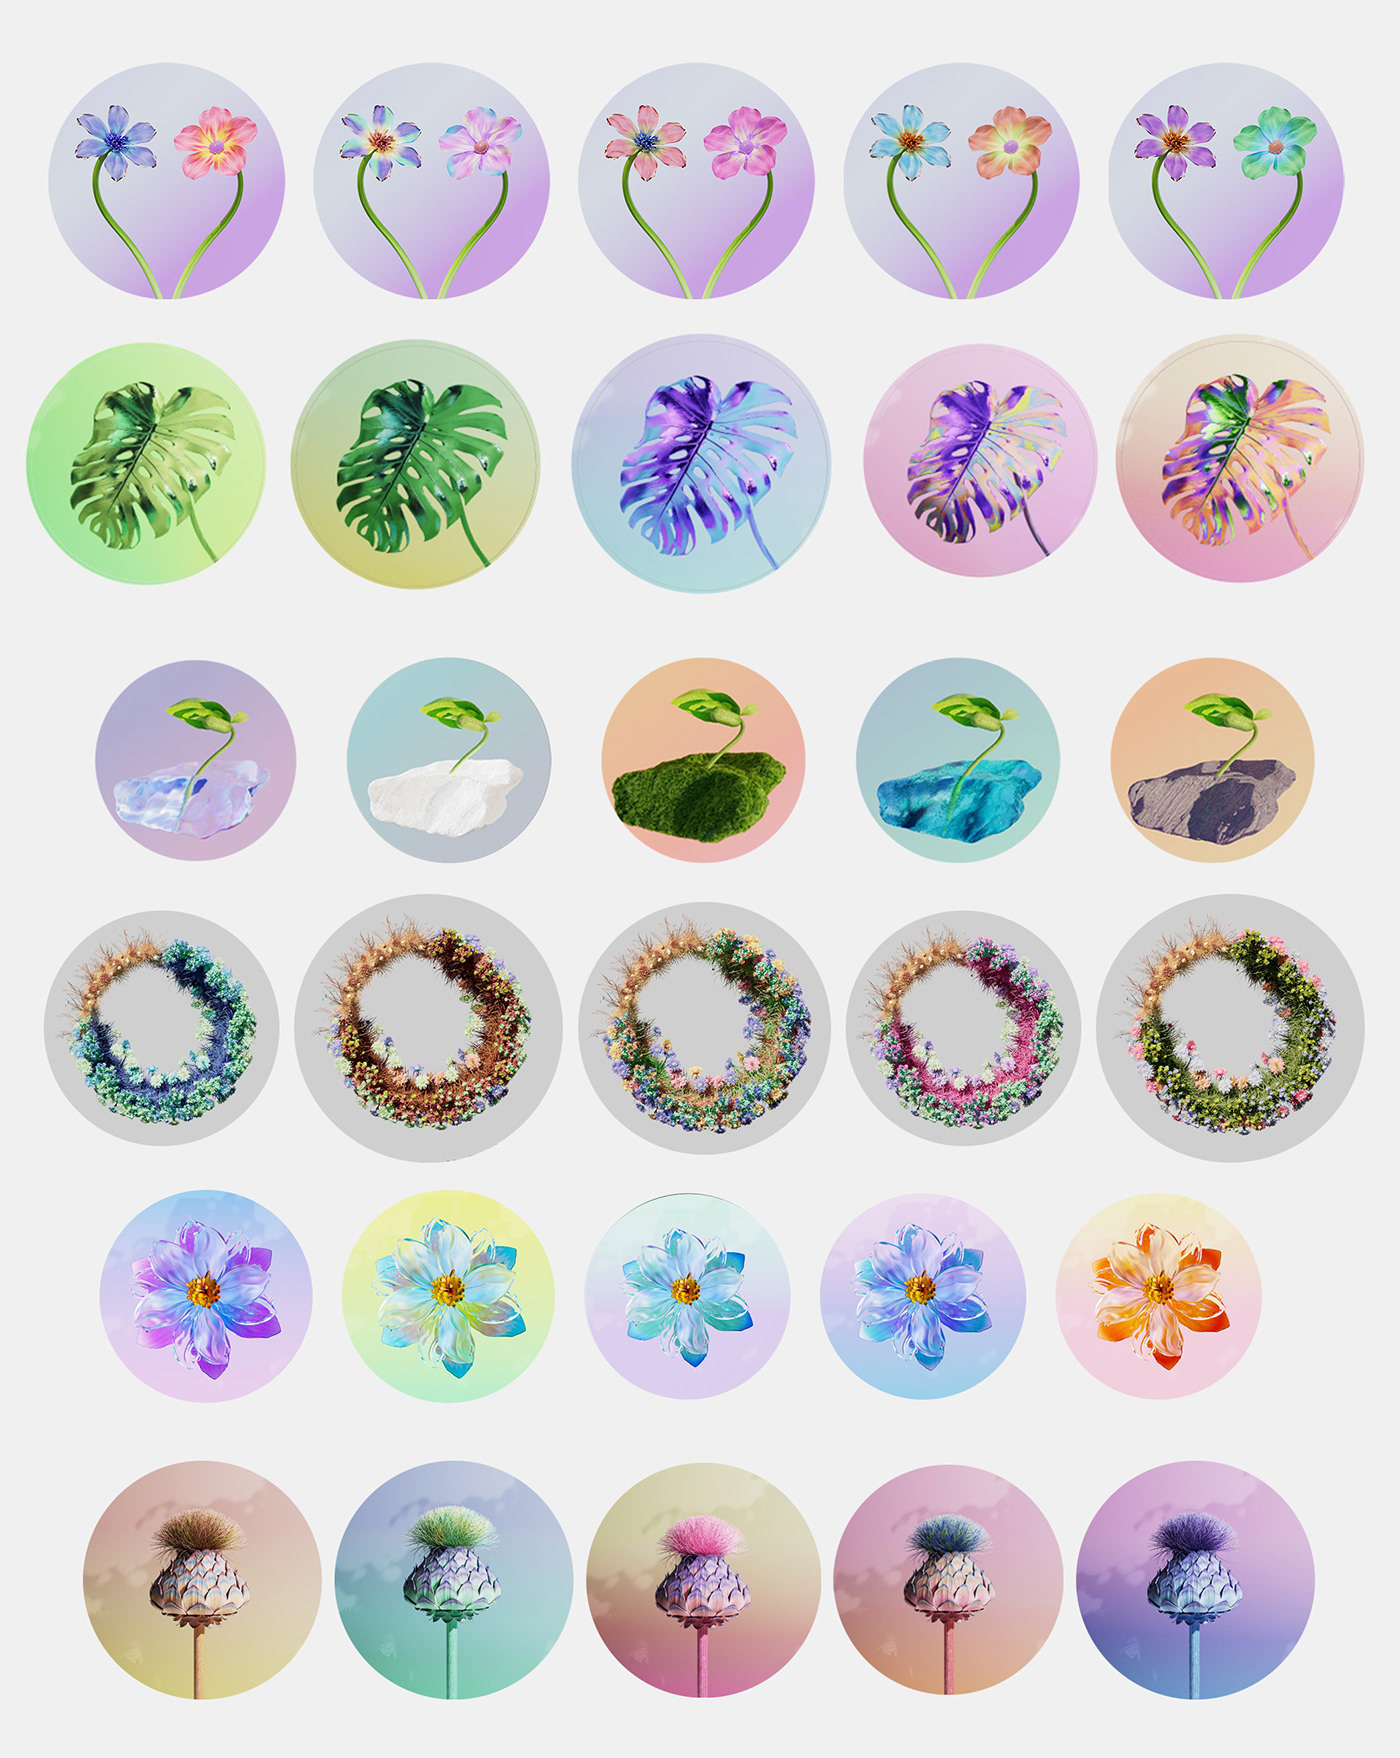 cinema4d 3D Render Flowers floral design Graphic Designer